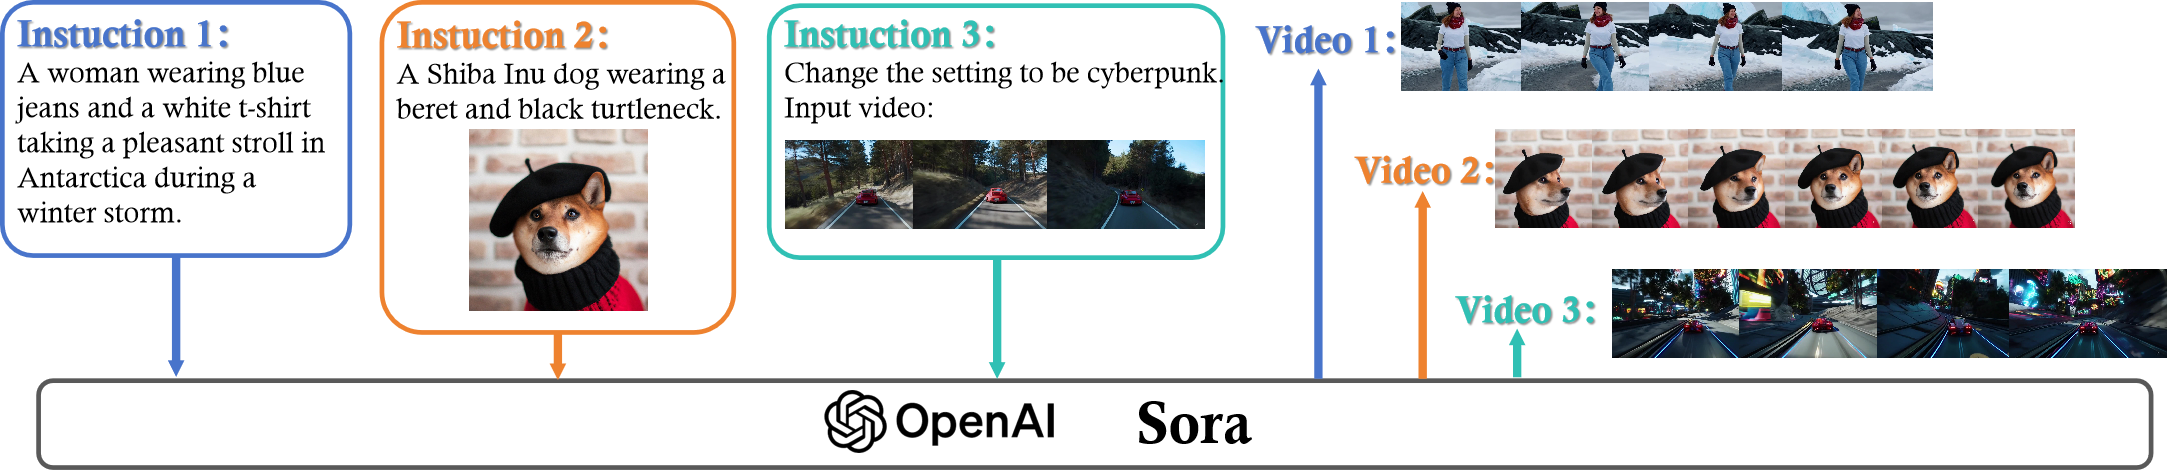 图 2: Sora 的文本到视频生成示例。文本指令输入到 OpenAI 的 Sora 模型中，随后它生成了三段根据指令制作的视频。